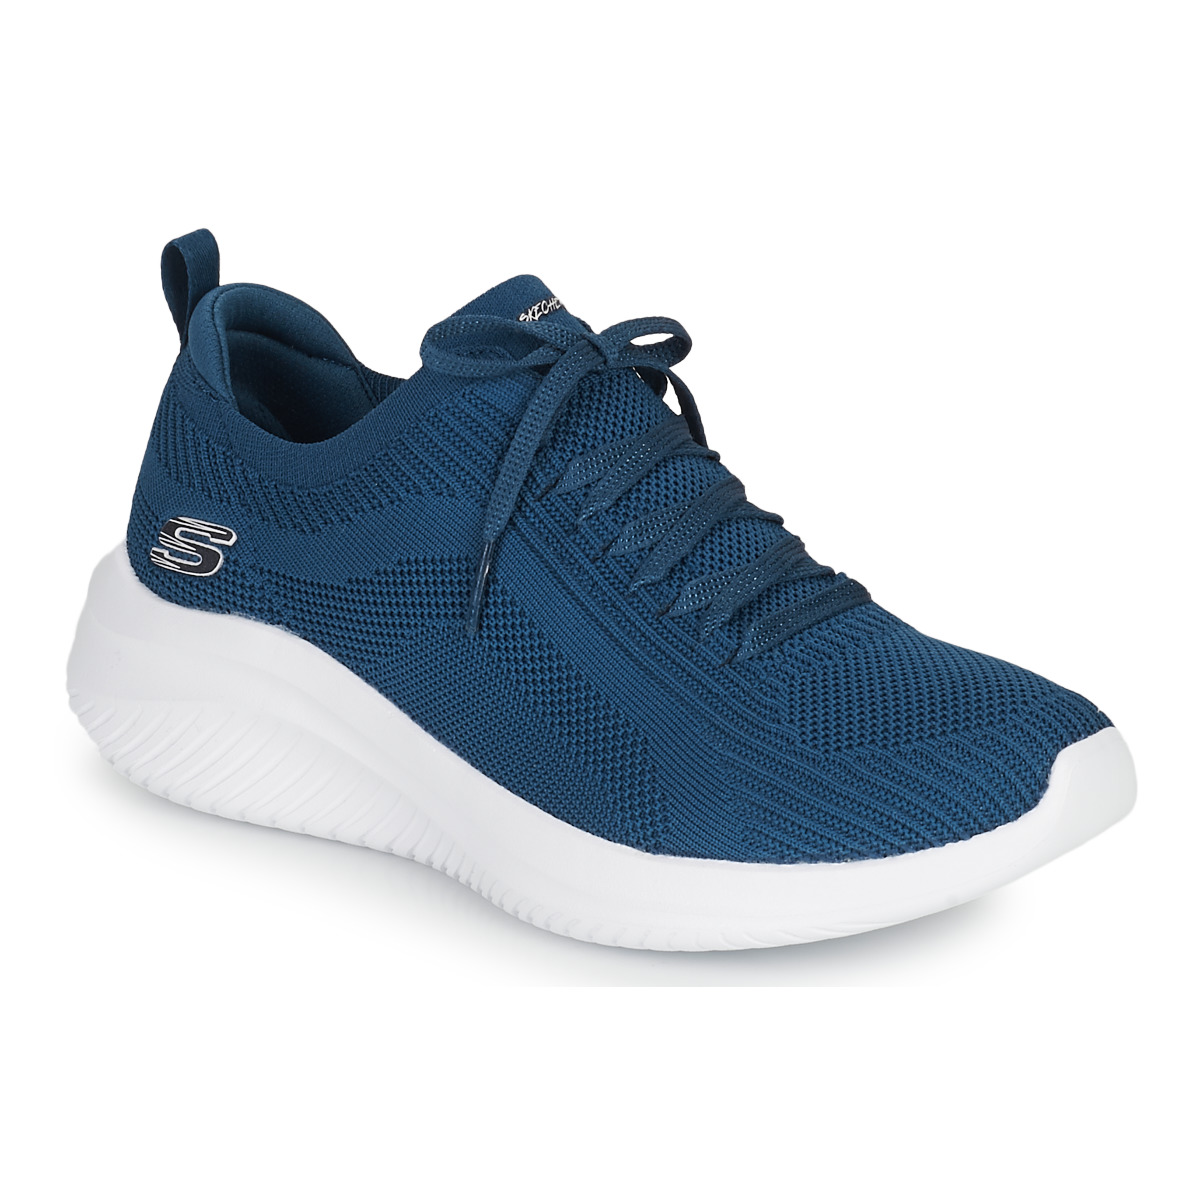 鞋子 女士 球鞋基本款 Skechers 斯凯奇 ULTRA FLEX 3.0 海蓝色